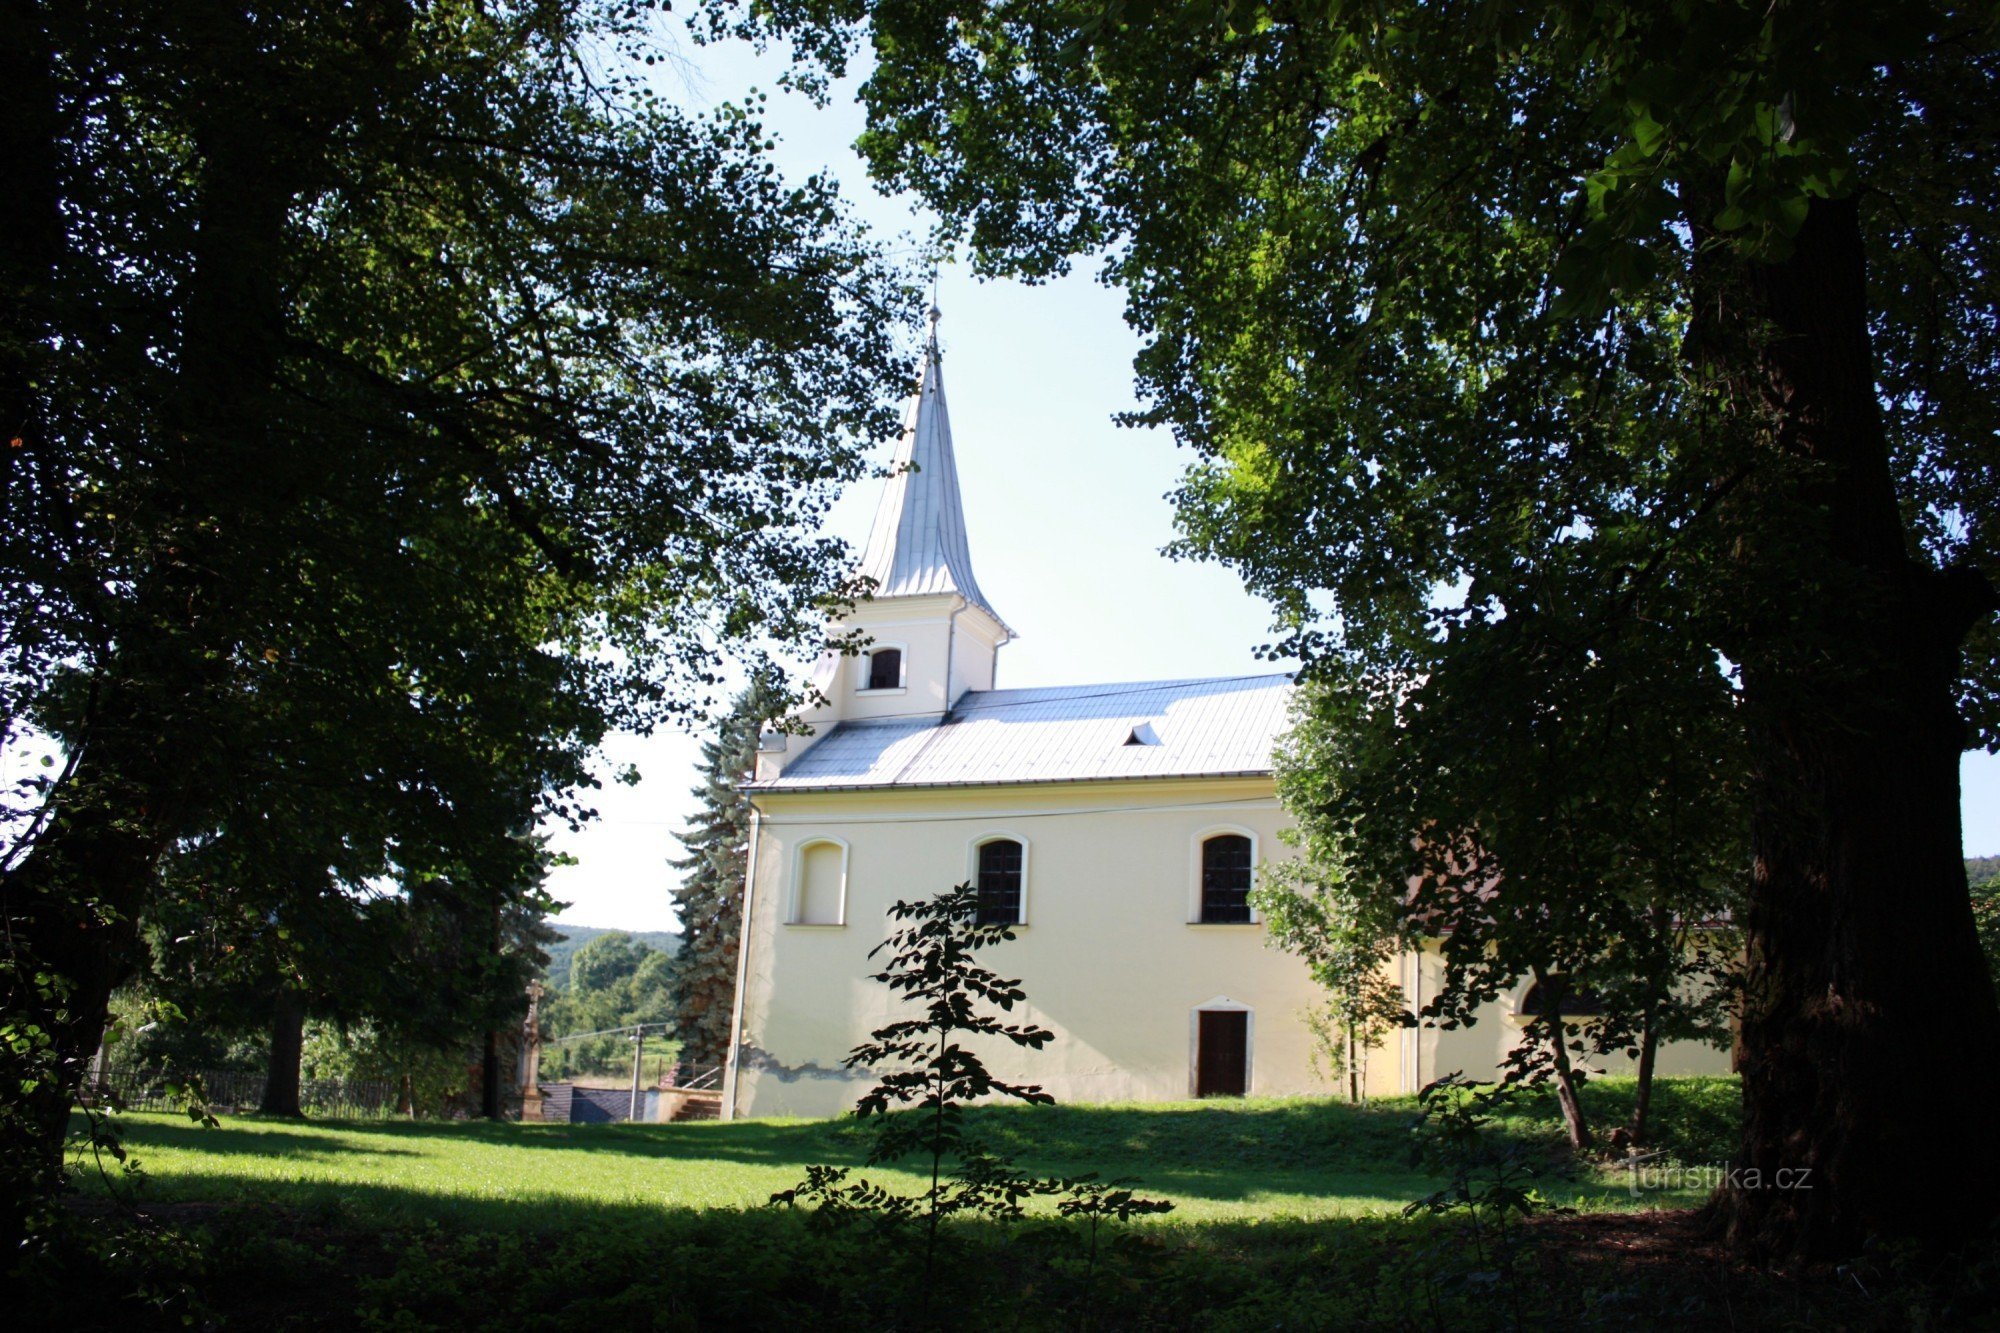 Рядом с замком находится церковь св. Лили